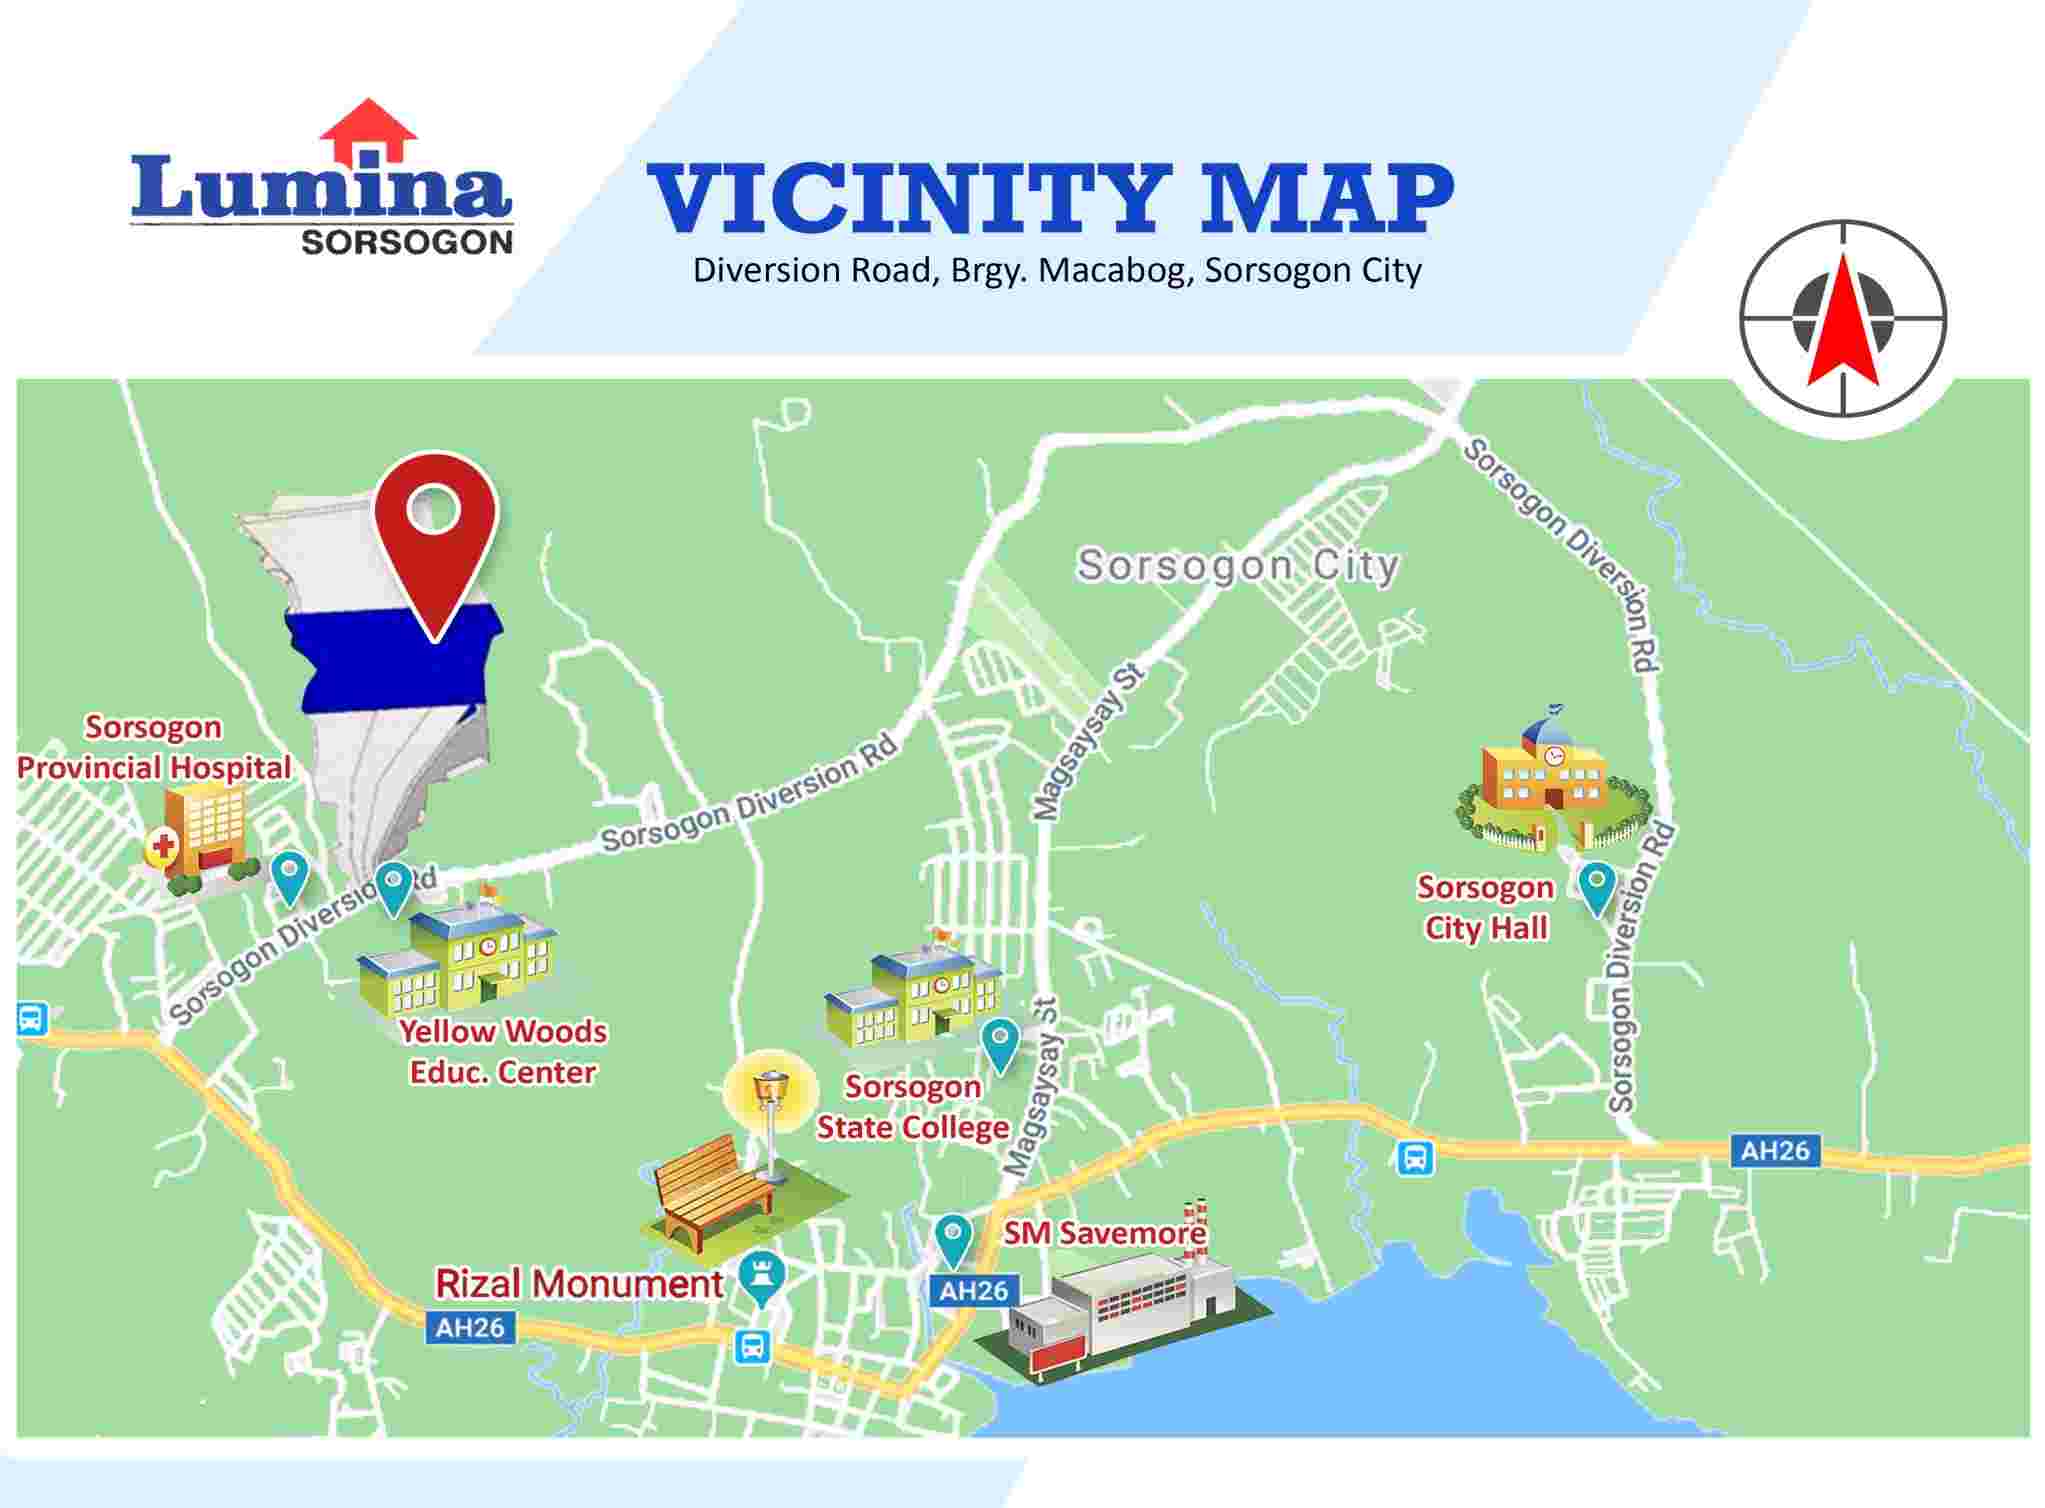 Vicinity-Map-1639457596.jpeg